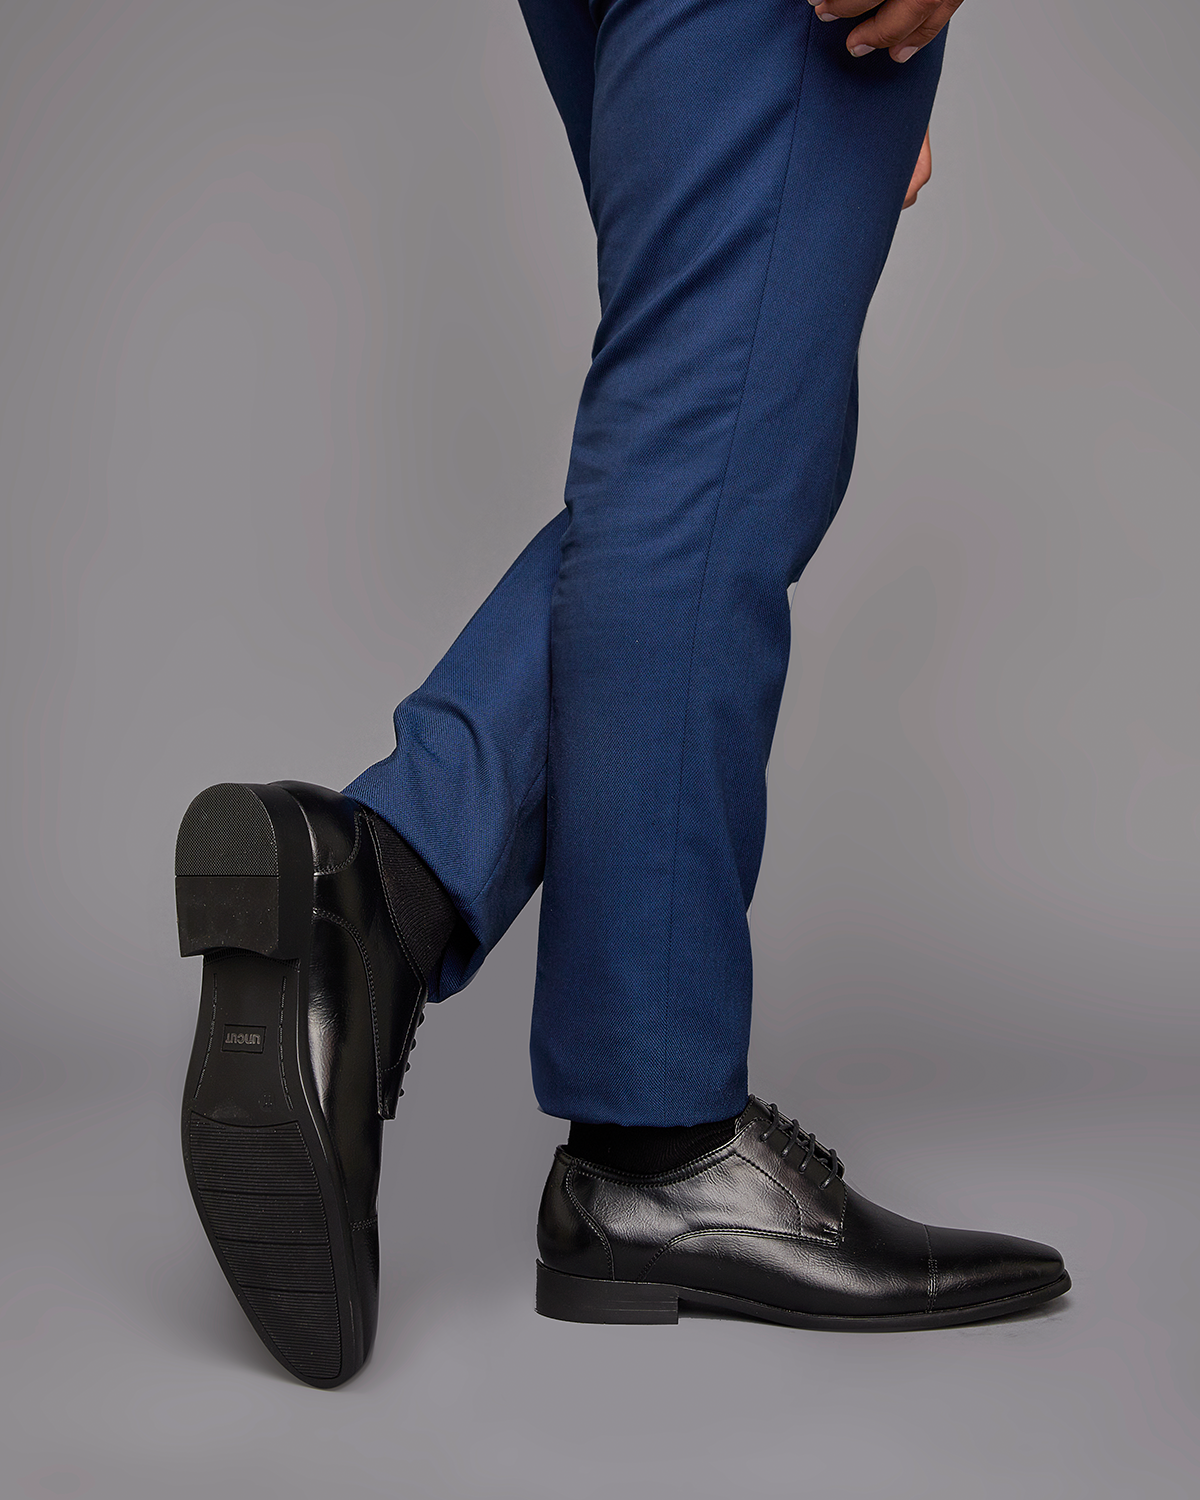 Uncut Shoes Perkins Black | Men's Dress Shoe | Derby | Lace Up | Work